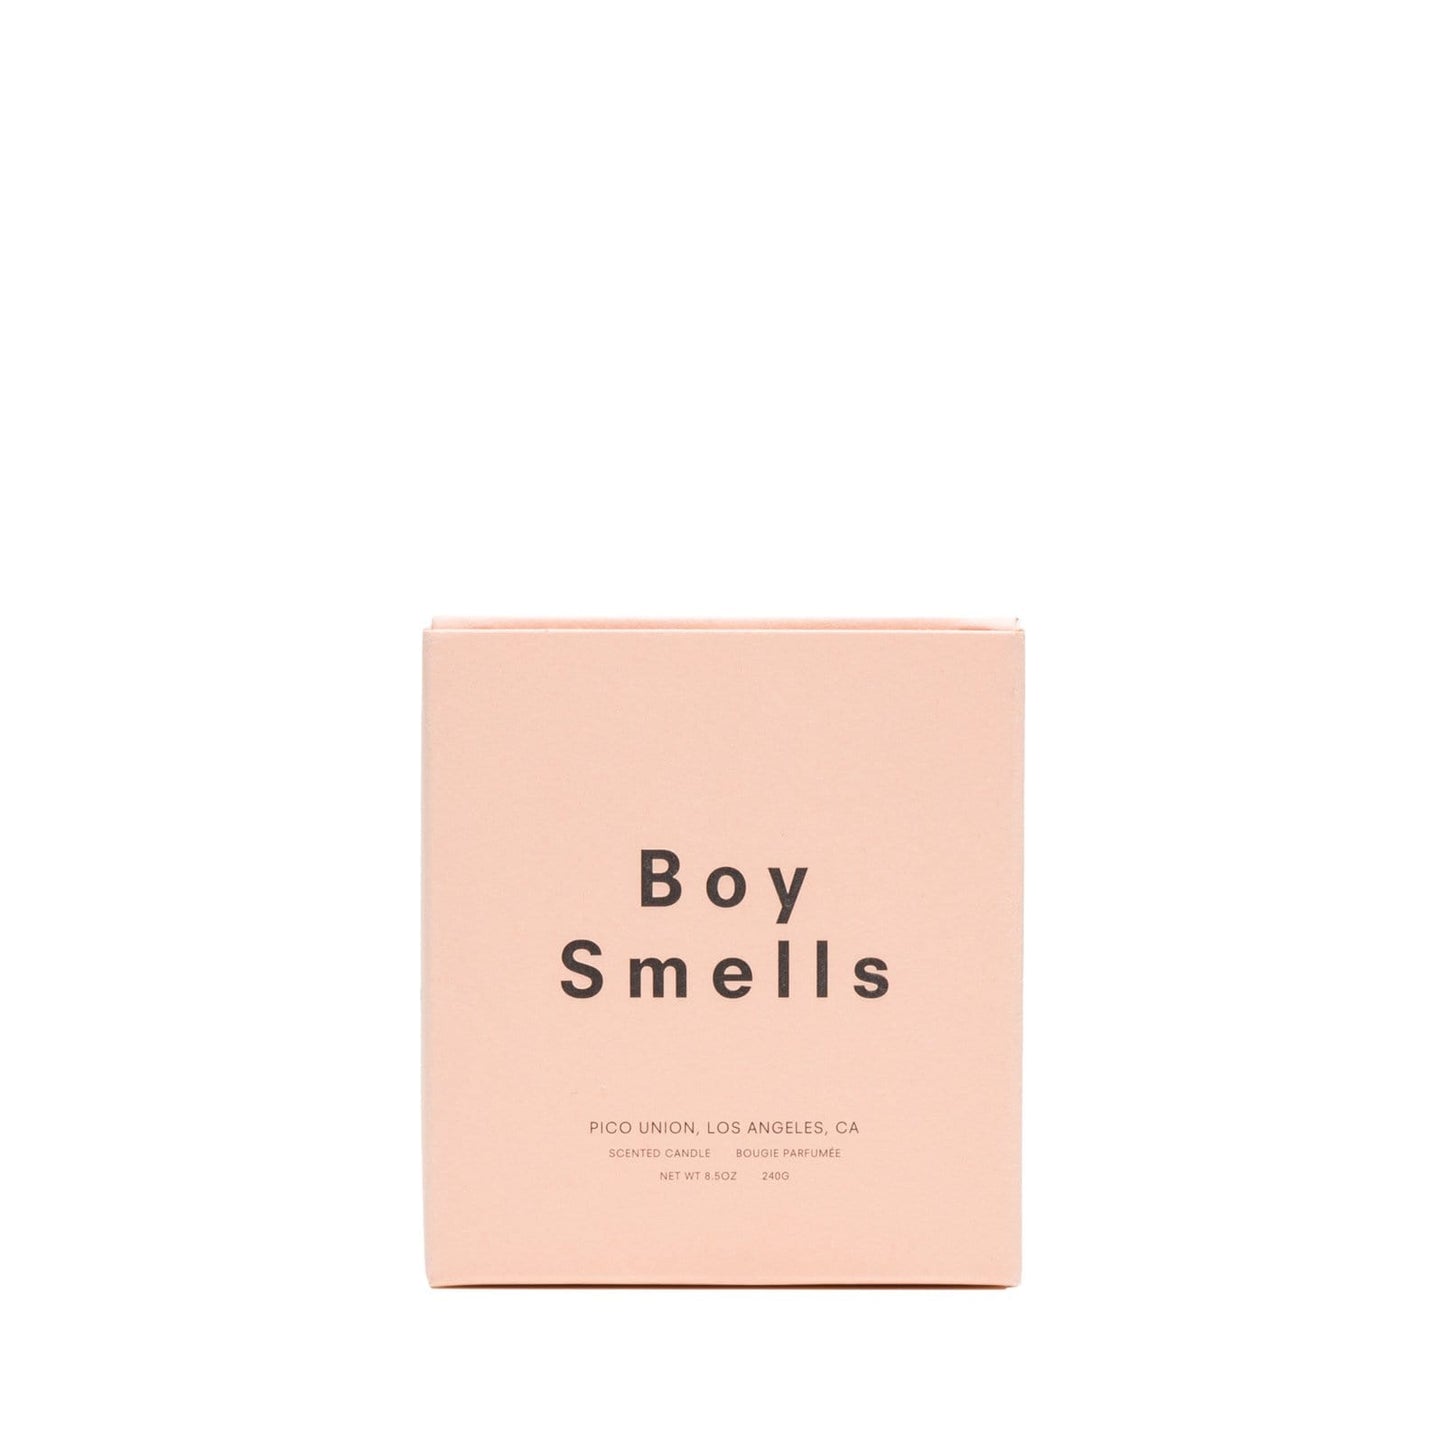 Boy Smells Bags & Accessories N/A / 8.5OZ / 9STA ST. AL